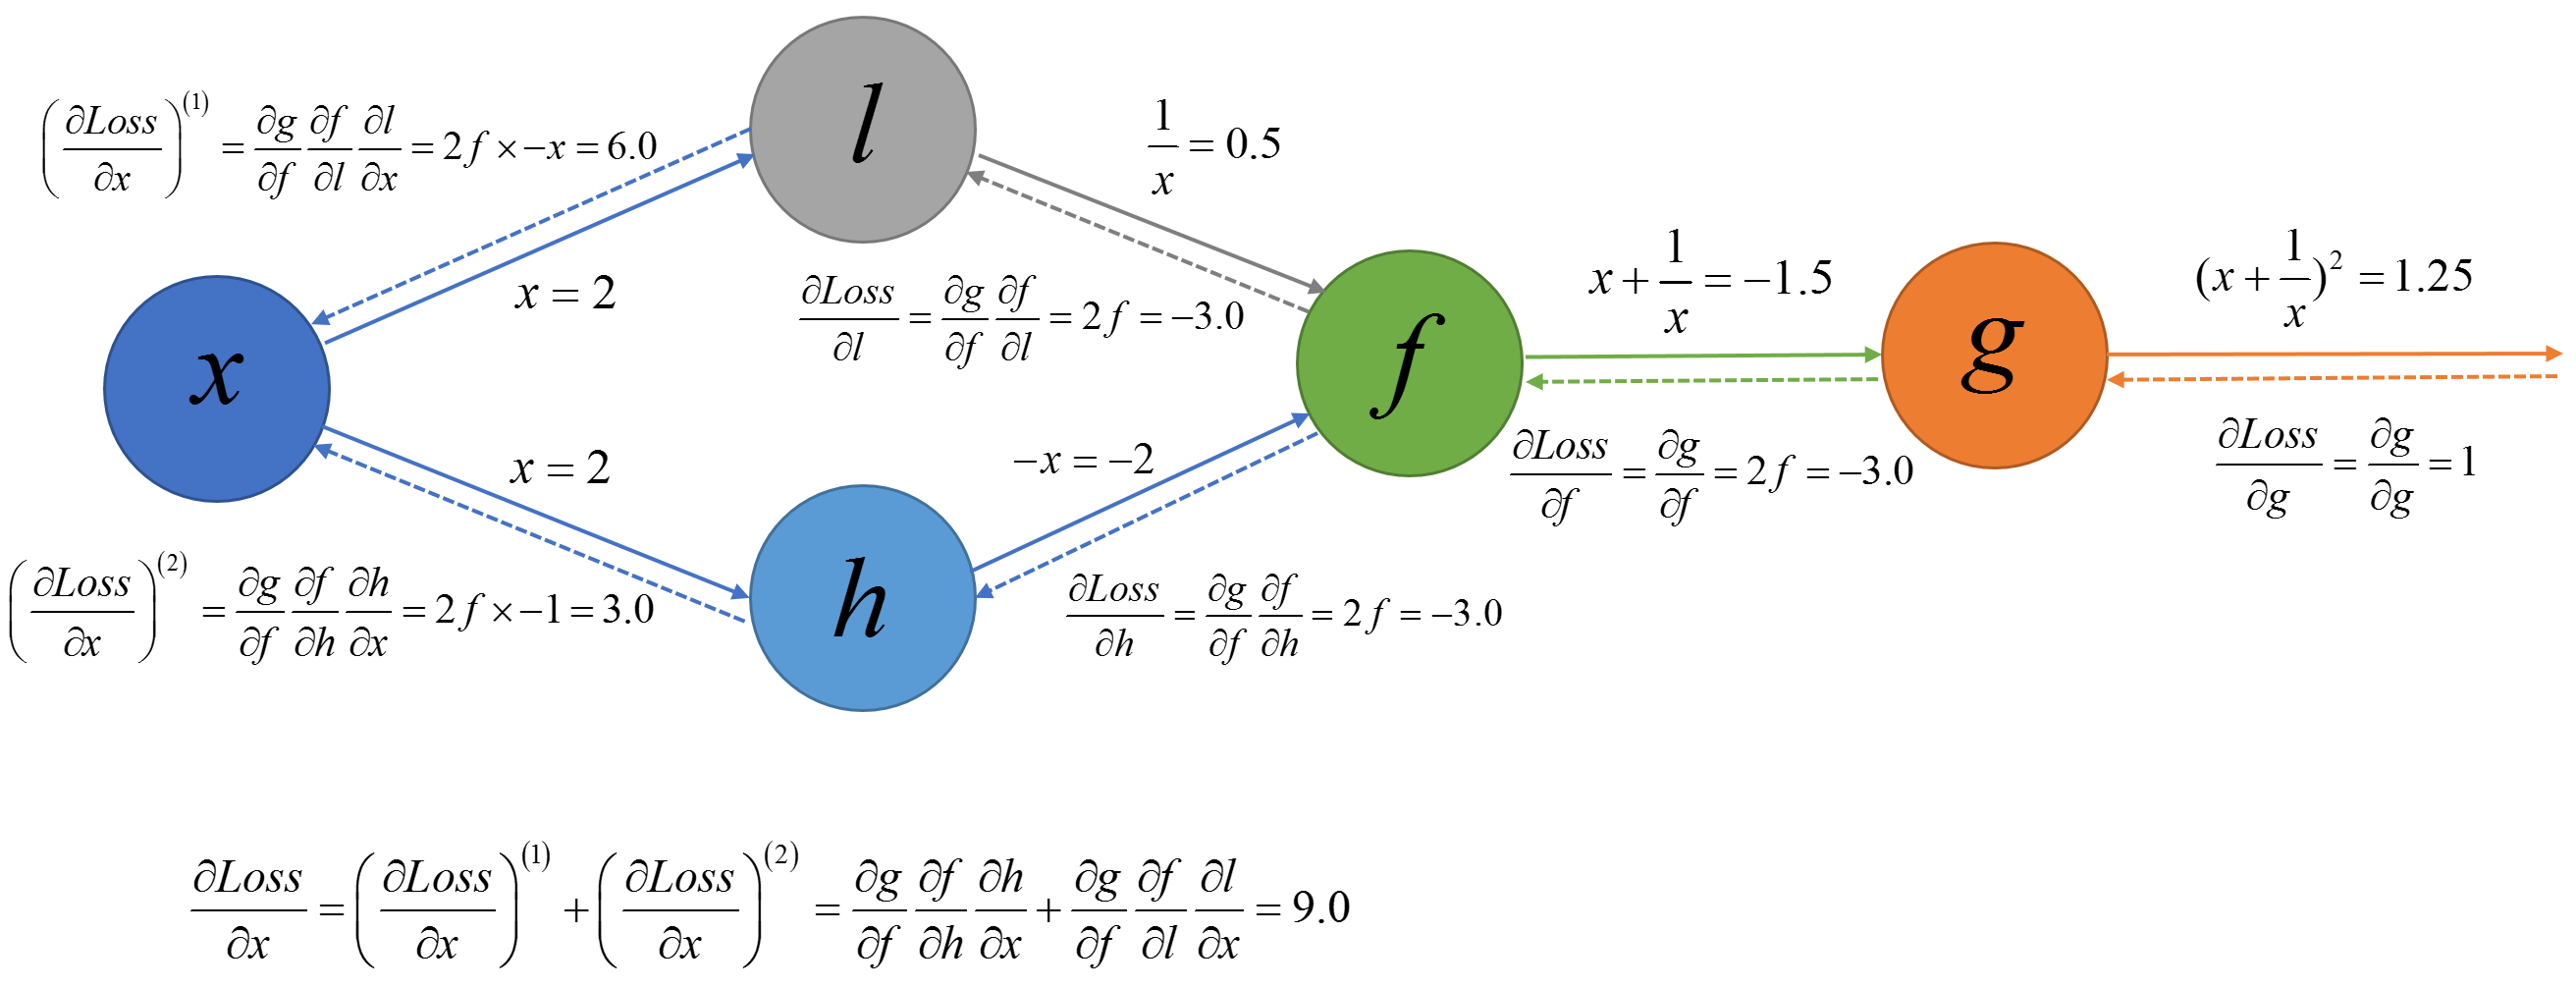 用numpy实现tensorflow式的深度学习框架similarflow